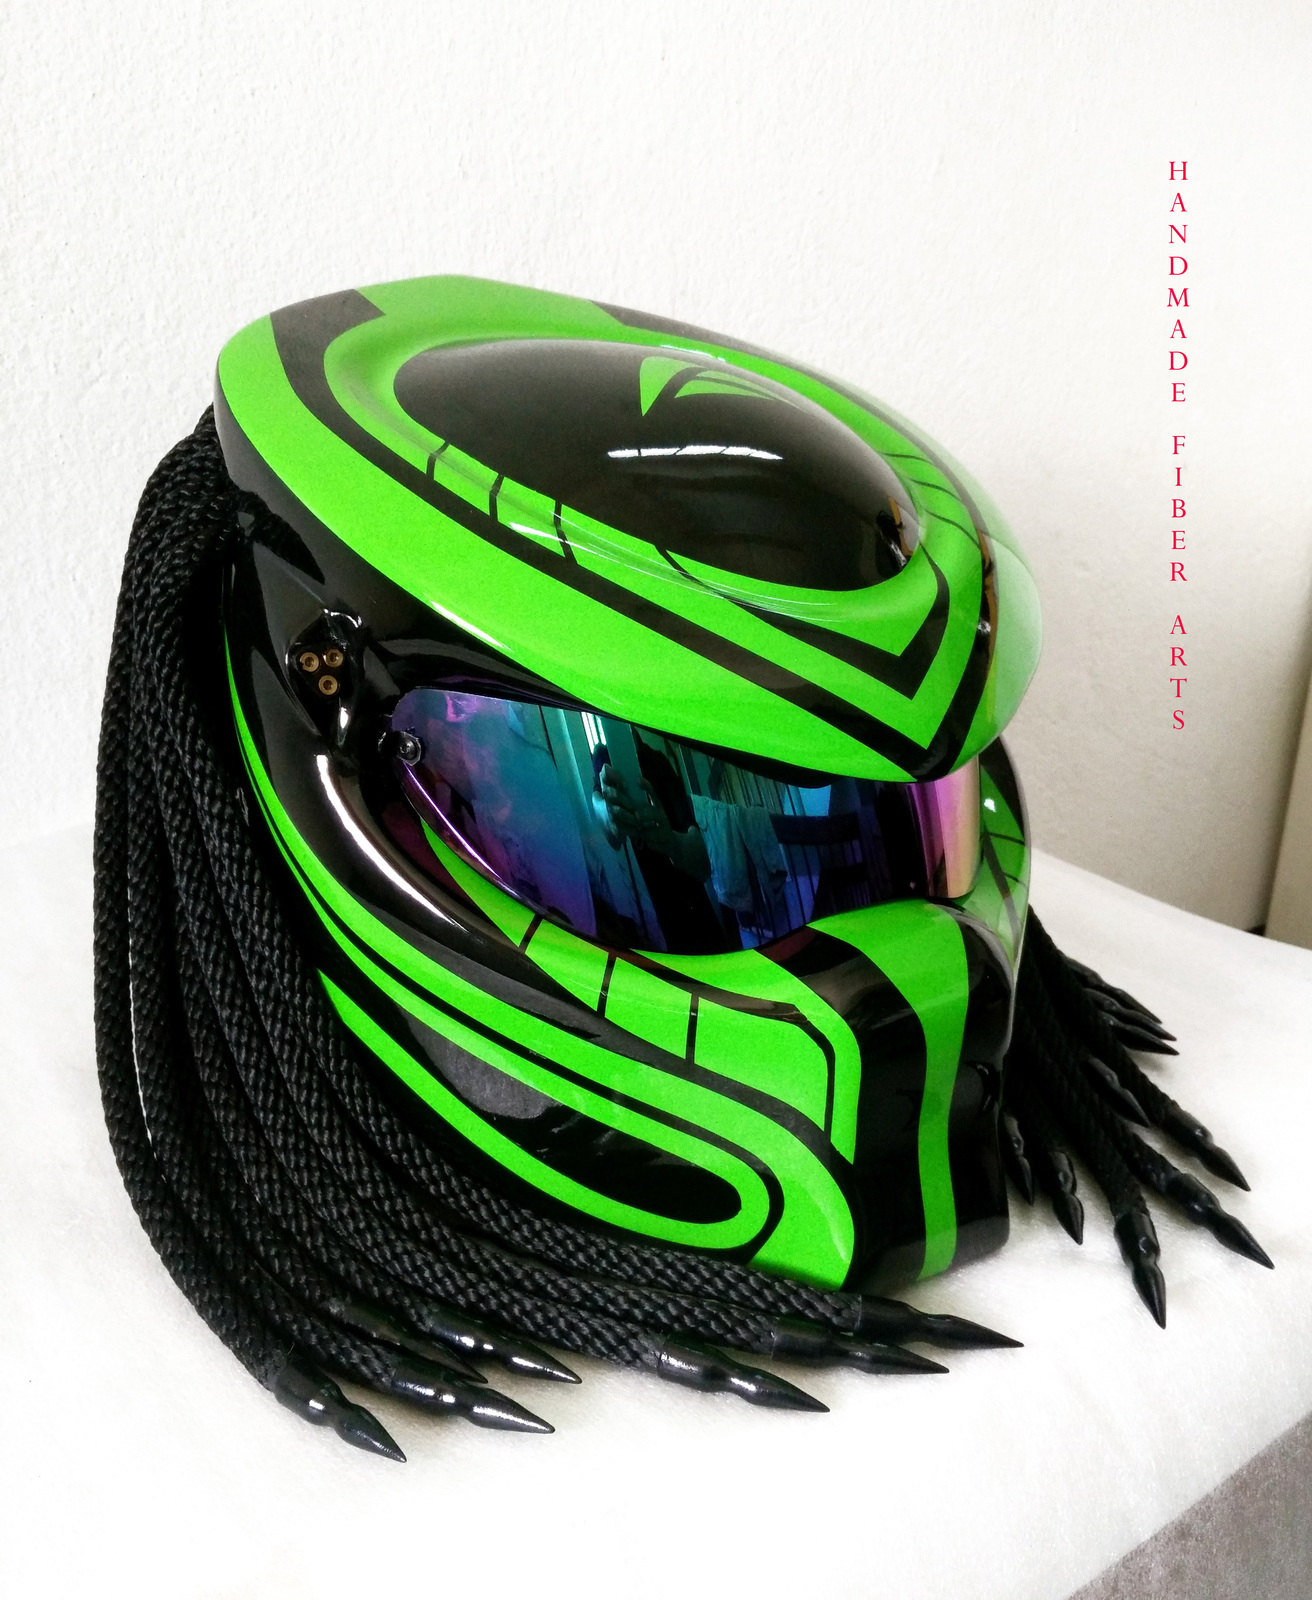 Custom Predator Motorcycle Helmet 